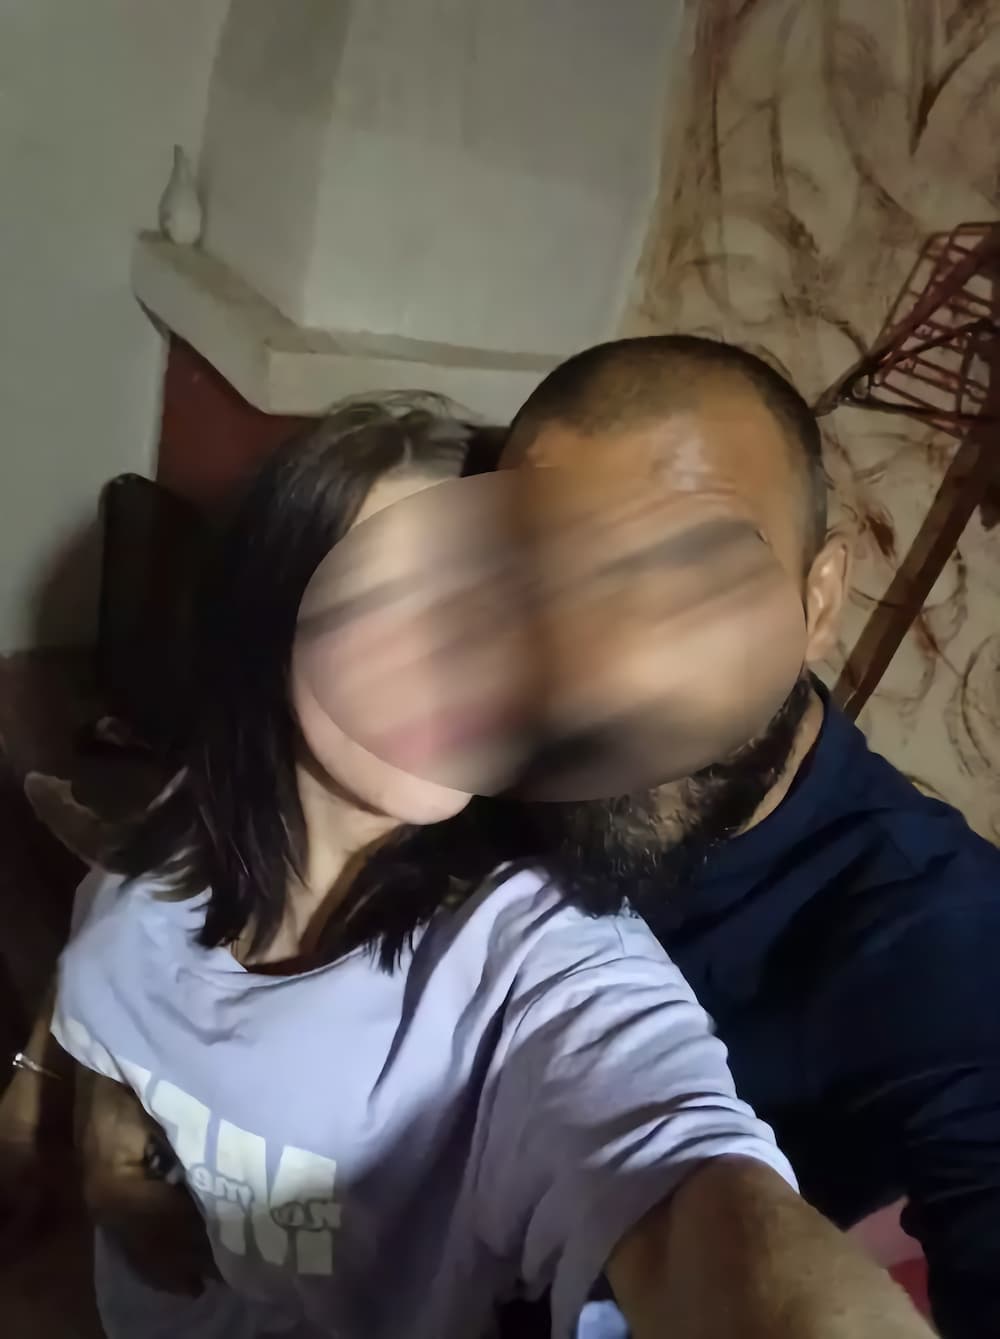 Γυναικοκτονία στη Λάρισα: Αυτή είναι η 35χρονη που βρέθηκε δολοφονημένη σε υπόγειο διαμέρισμα - Ήταν μητέρα ενός παιδιού (εικόνες)